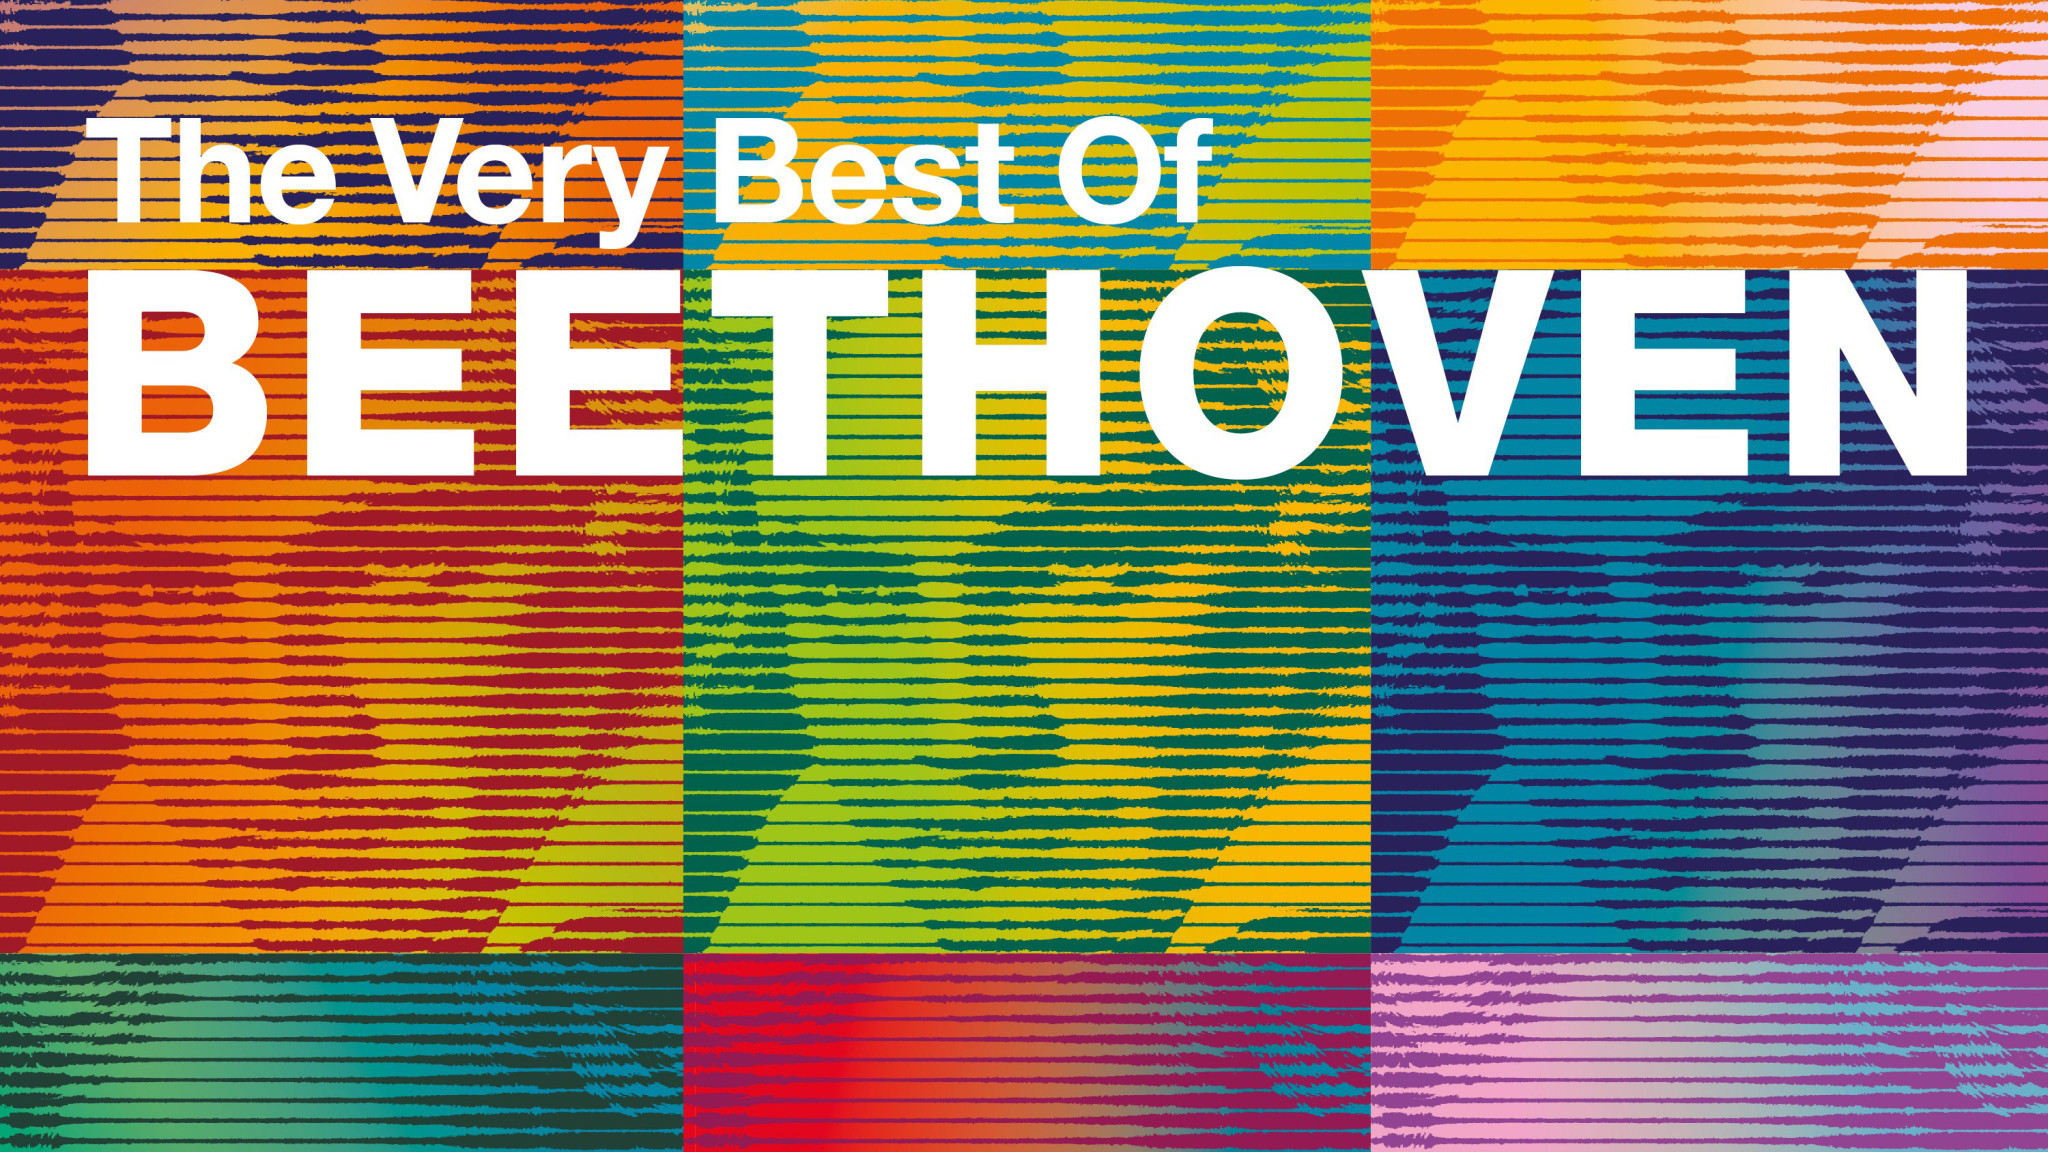 Ludwig van Beethoven - Very best of Beethoven